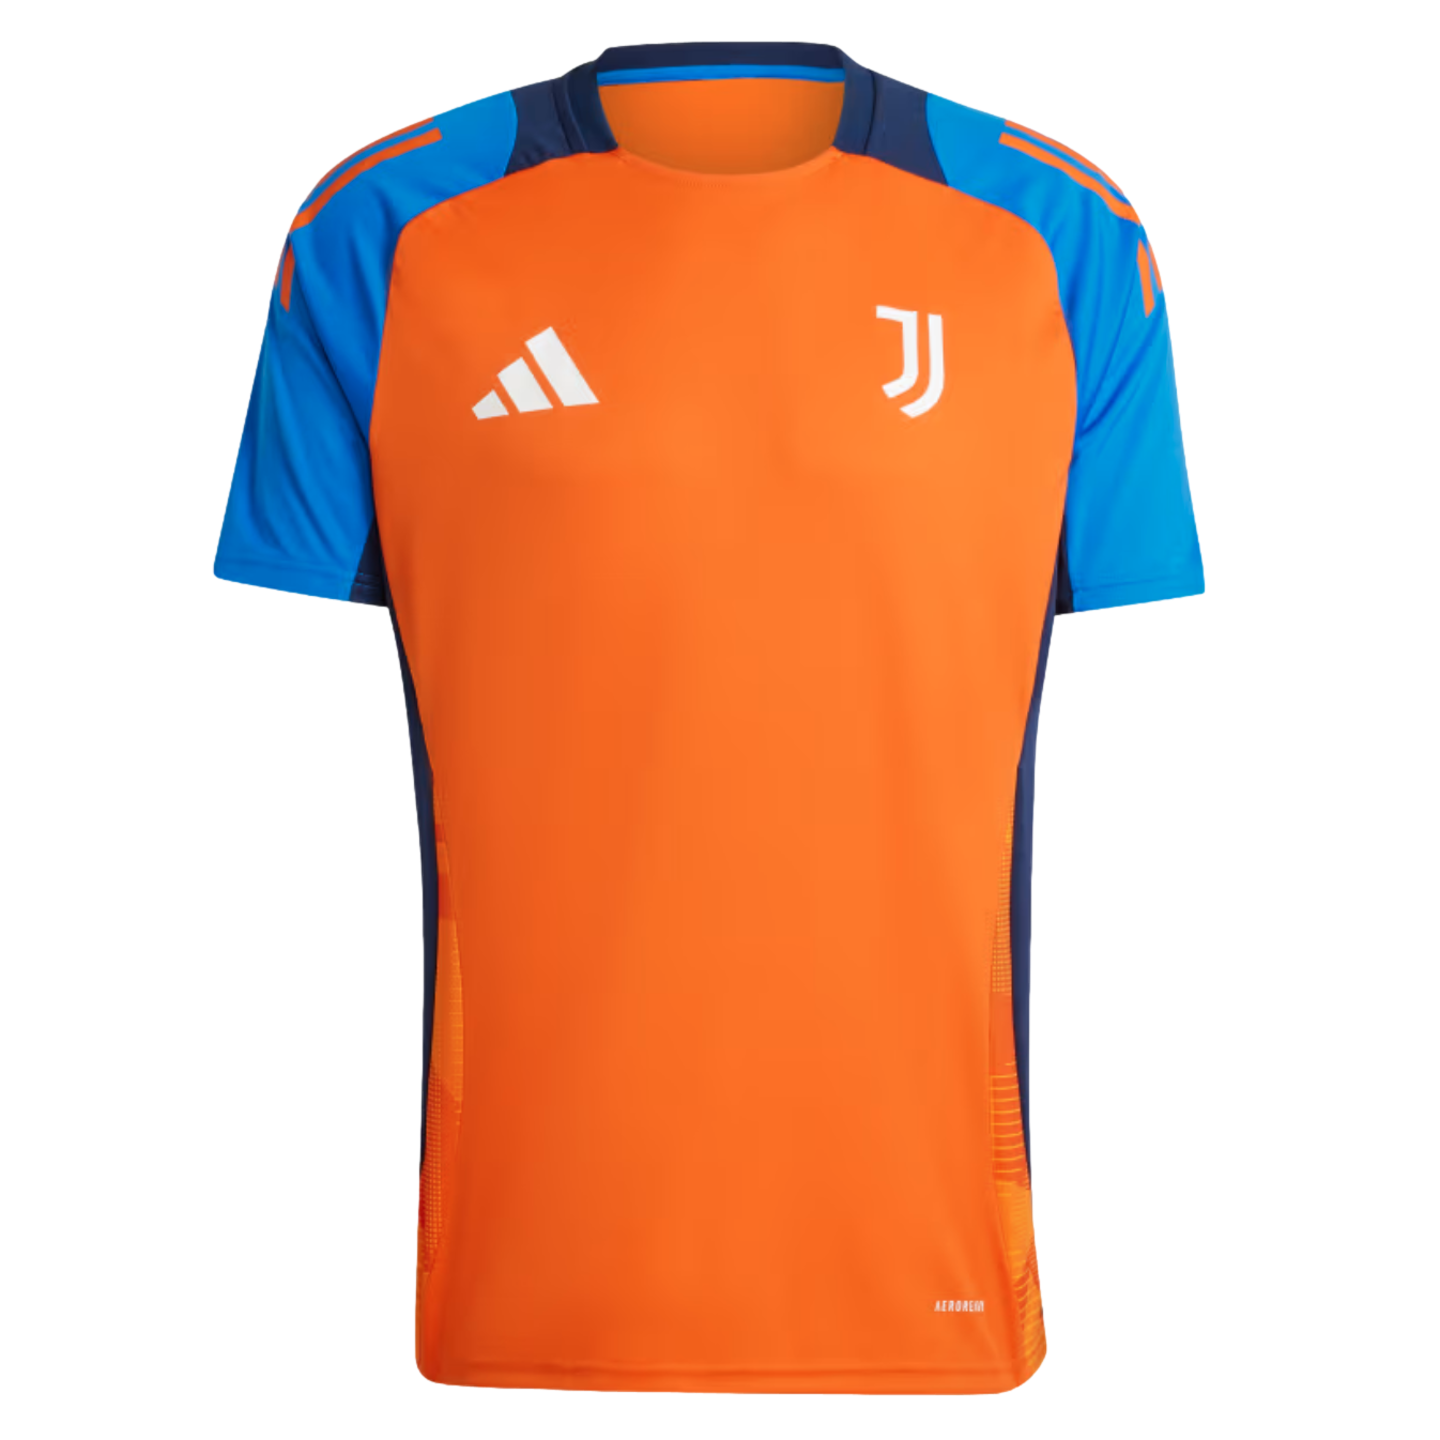 (ADID-IS5831) Camiseta de entrenamiento Adidas Juventus [TEAORA]